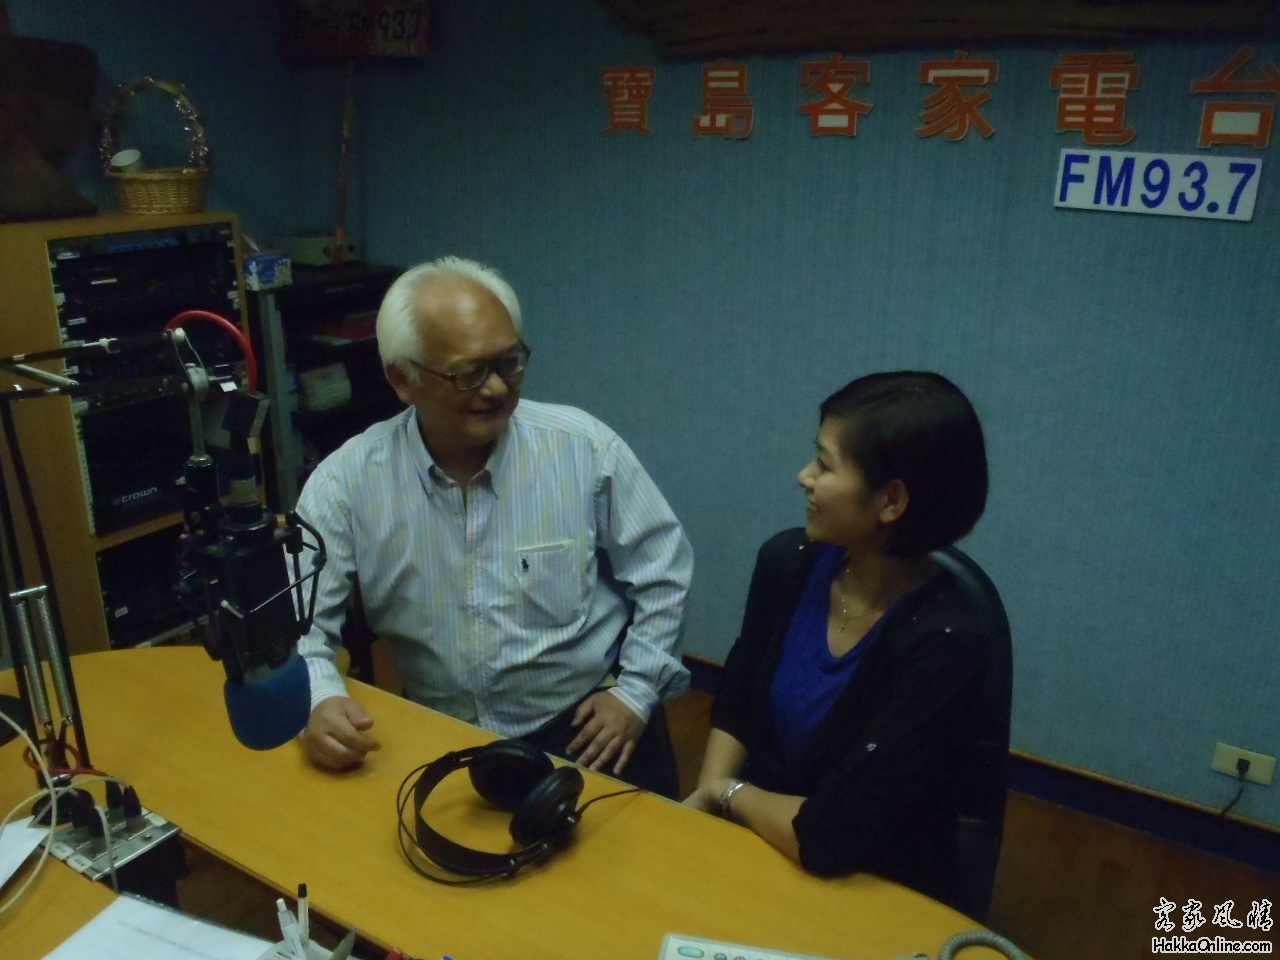 模拟台湾客家电台的"俊"男和"鈺"女接受采访